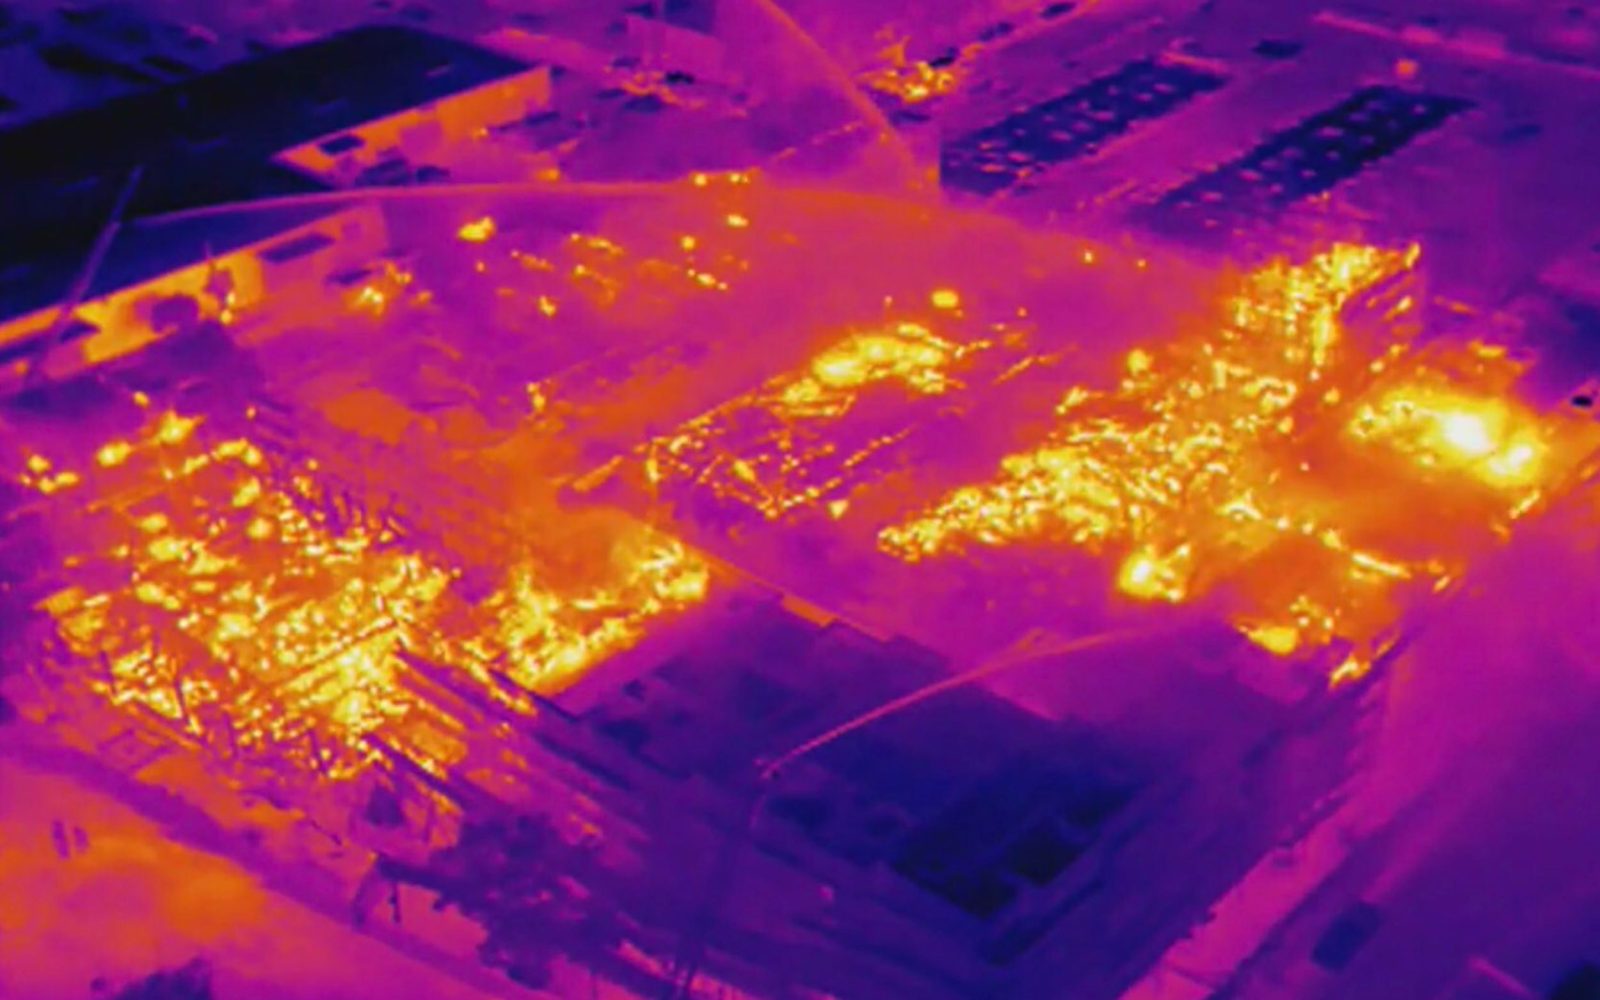 Drones thermal sensors heat